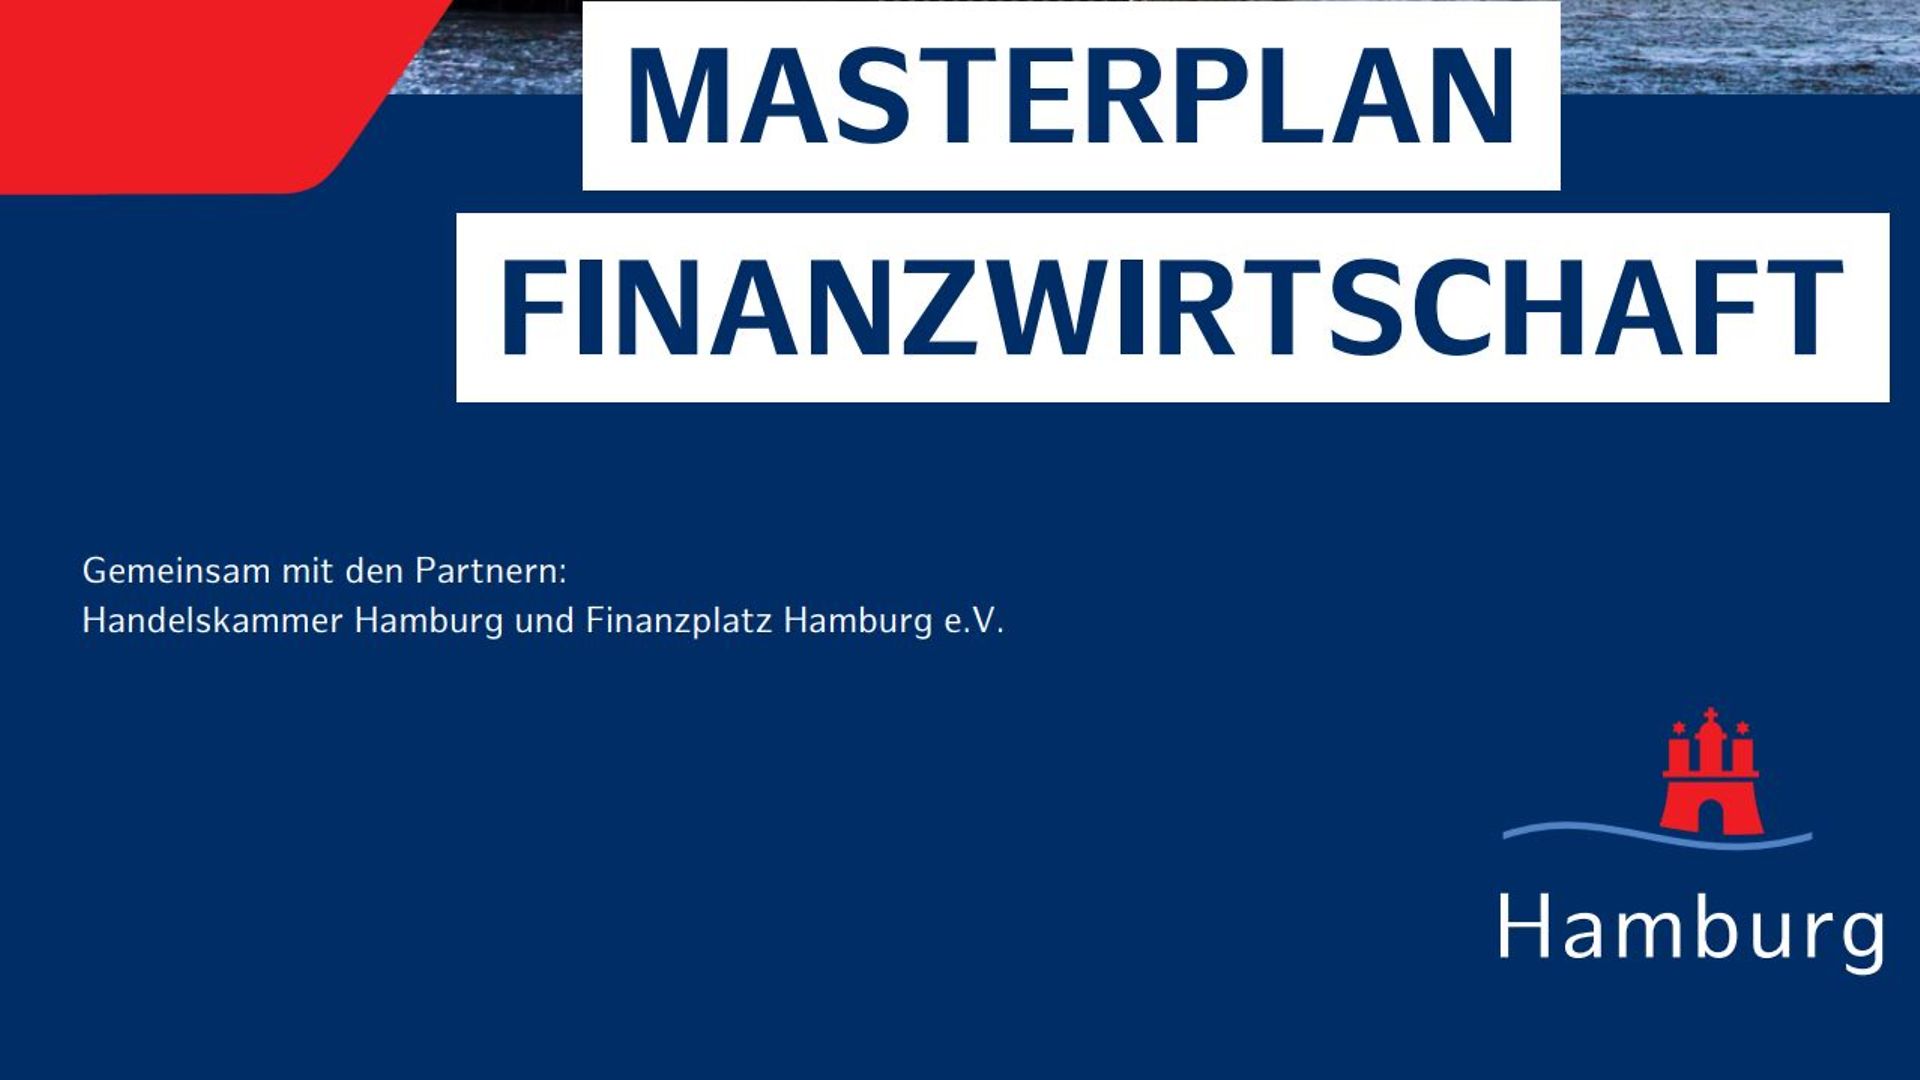 Masterplan Finanzwirtschaft (1)